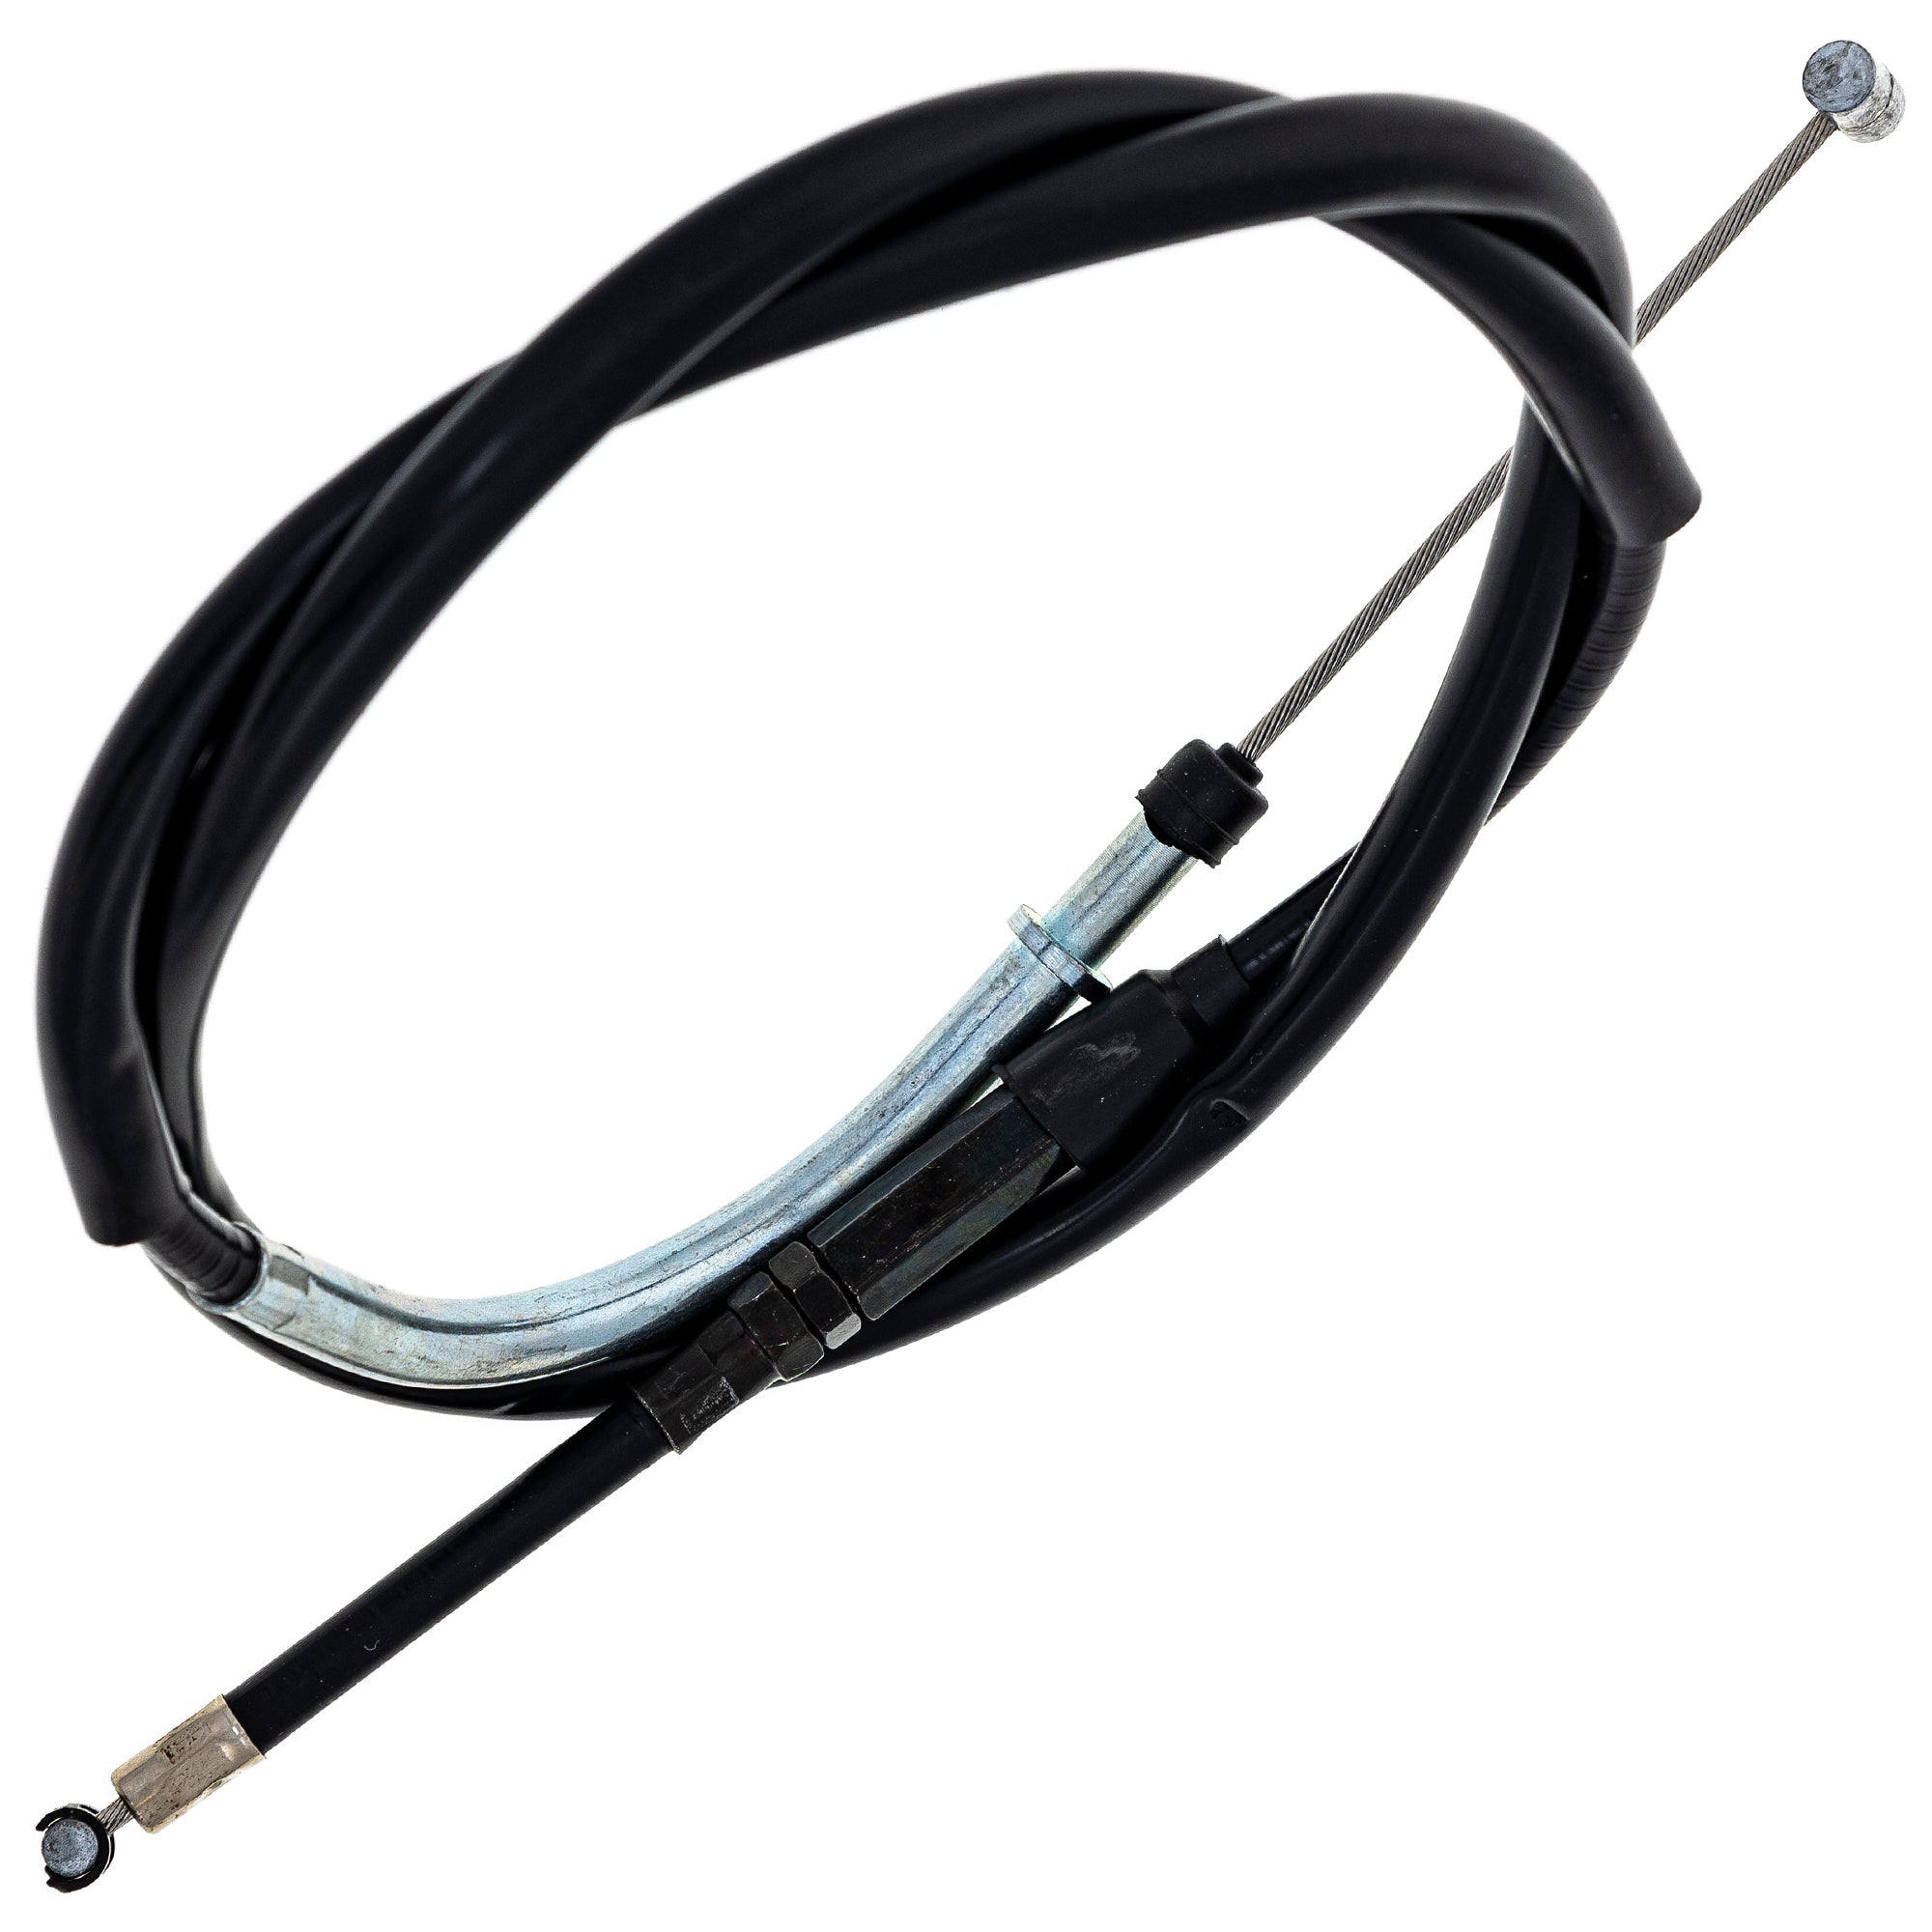 Clutch Cable for Suzuki DR650SE 58200-32E01 58200-32E00 1996-2013